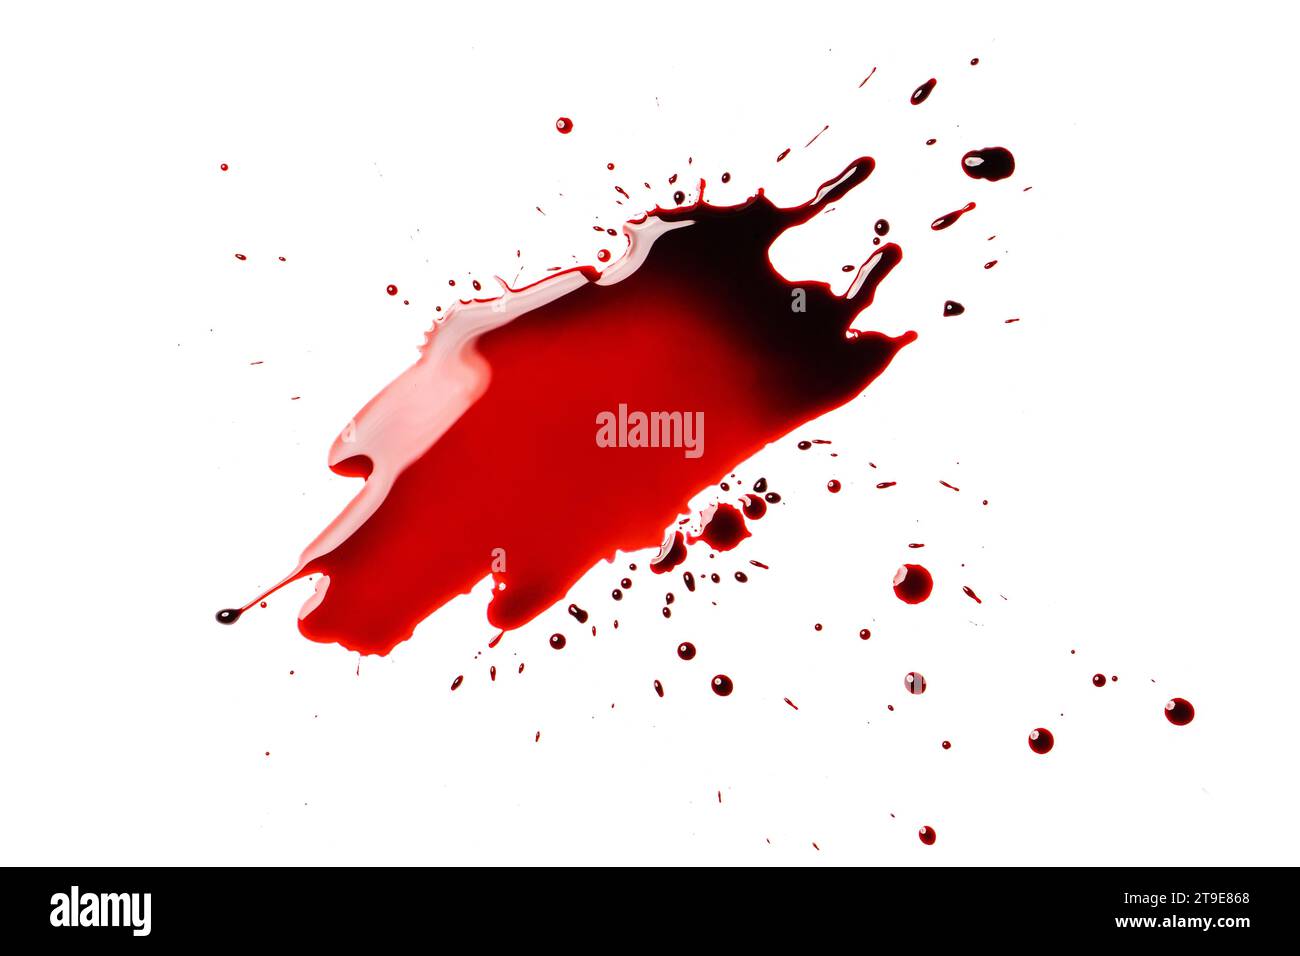 Rote Blutspritzer auf weißem Hintergrund. Grafikressource für die Konstruktion. Stockfoto